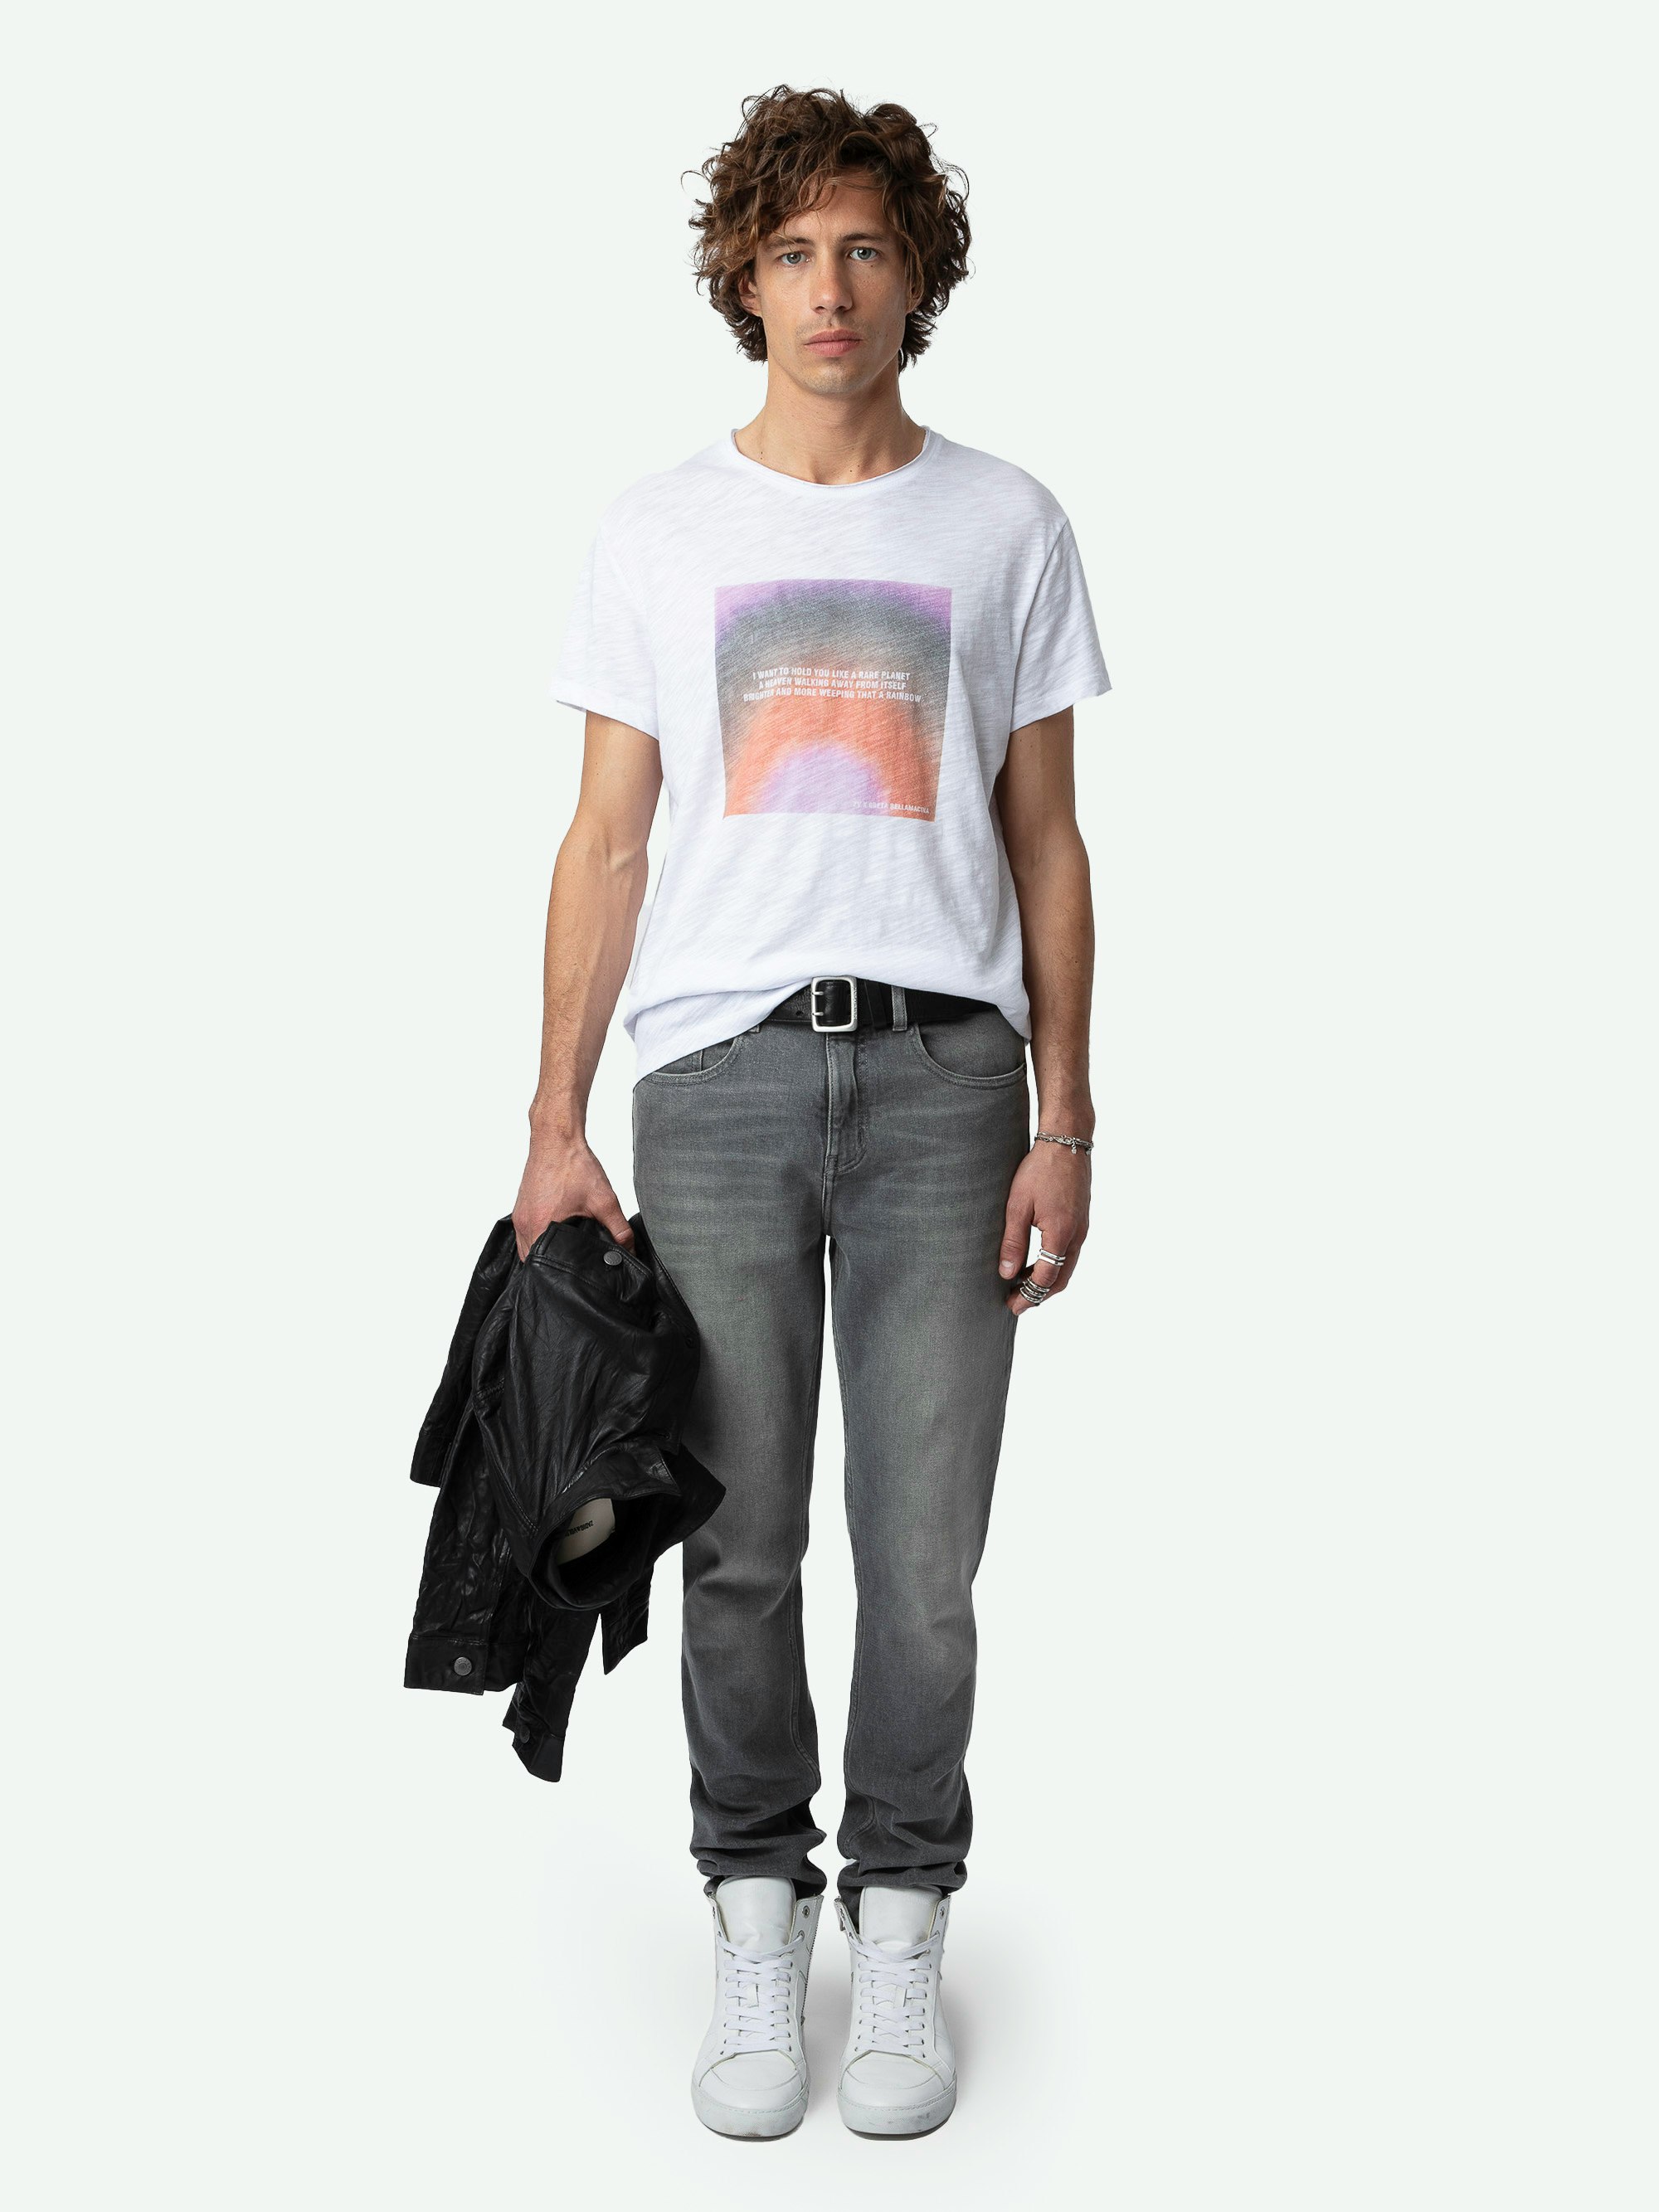 Camiseta Toby con Estampado Fotográfico - Camiseta flameada de algodón ecológico de manga corta, con estampado fotográfico y poema Greta en la parte delantera.